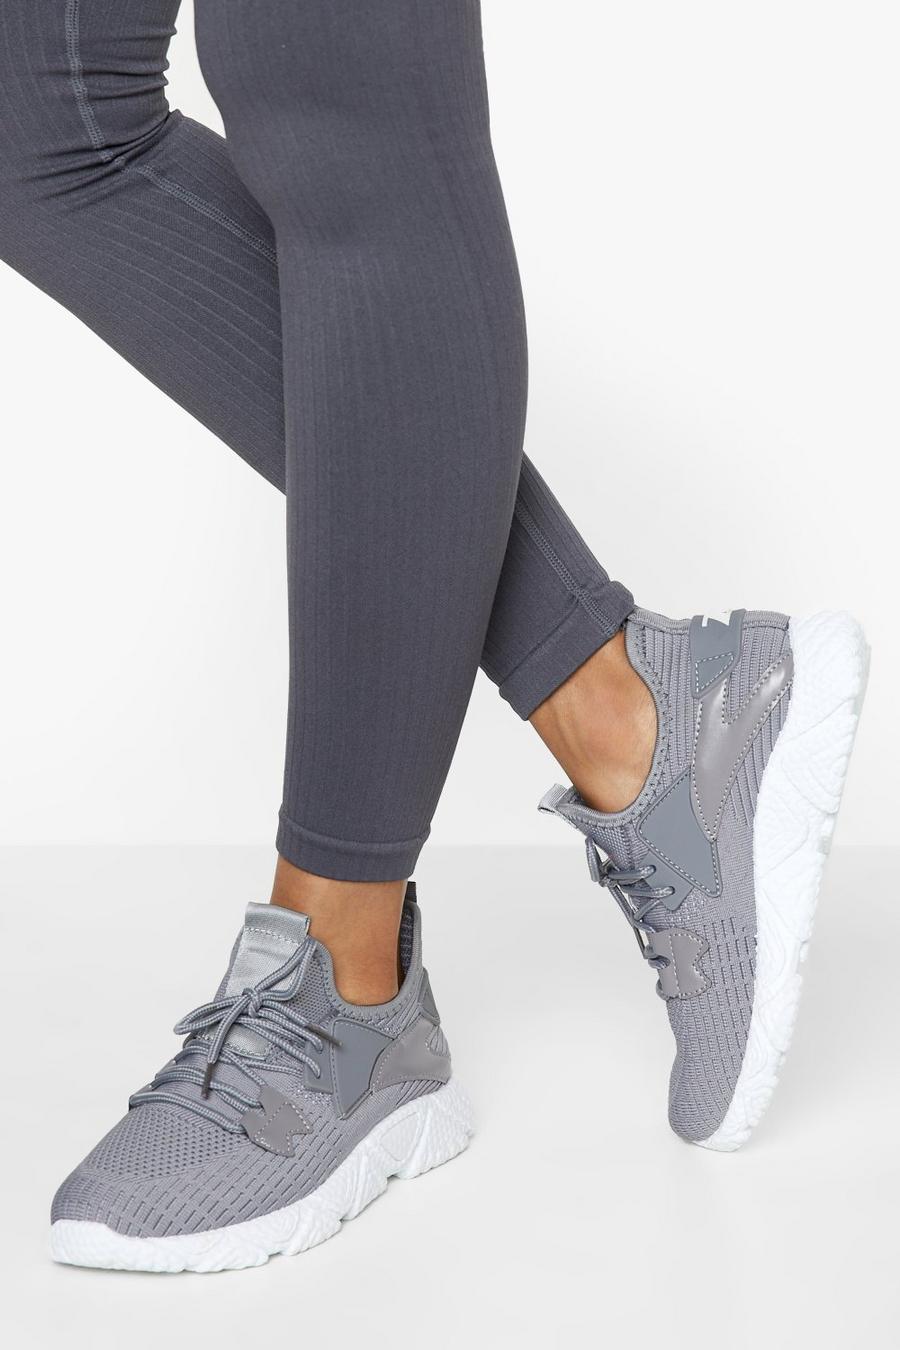 Sneaker a calza sportive in maglia, Grey grigio